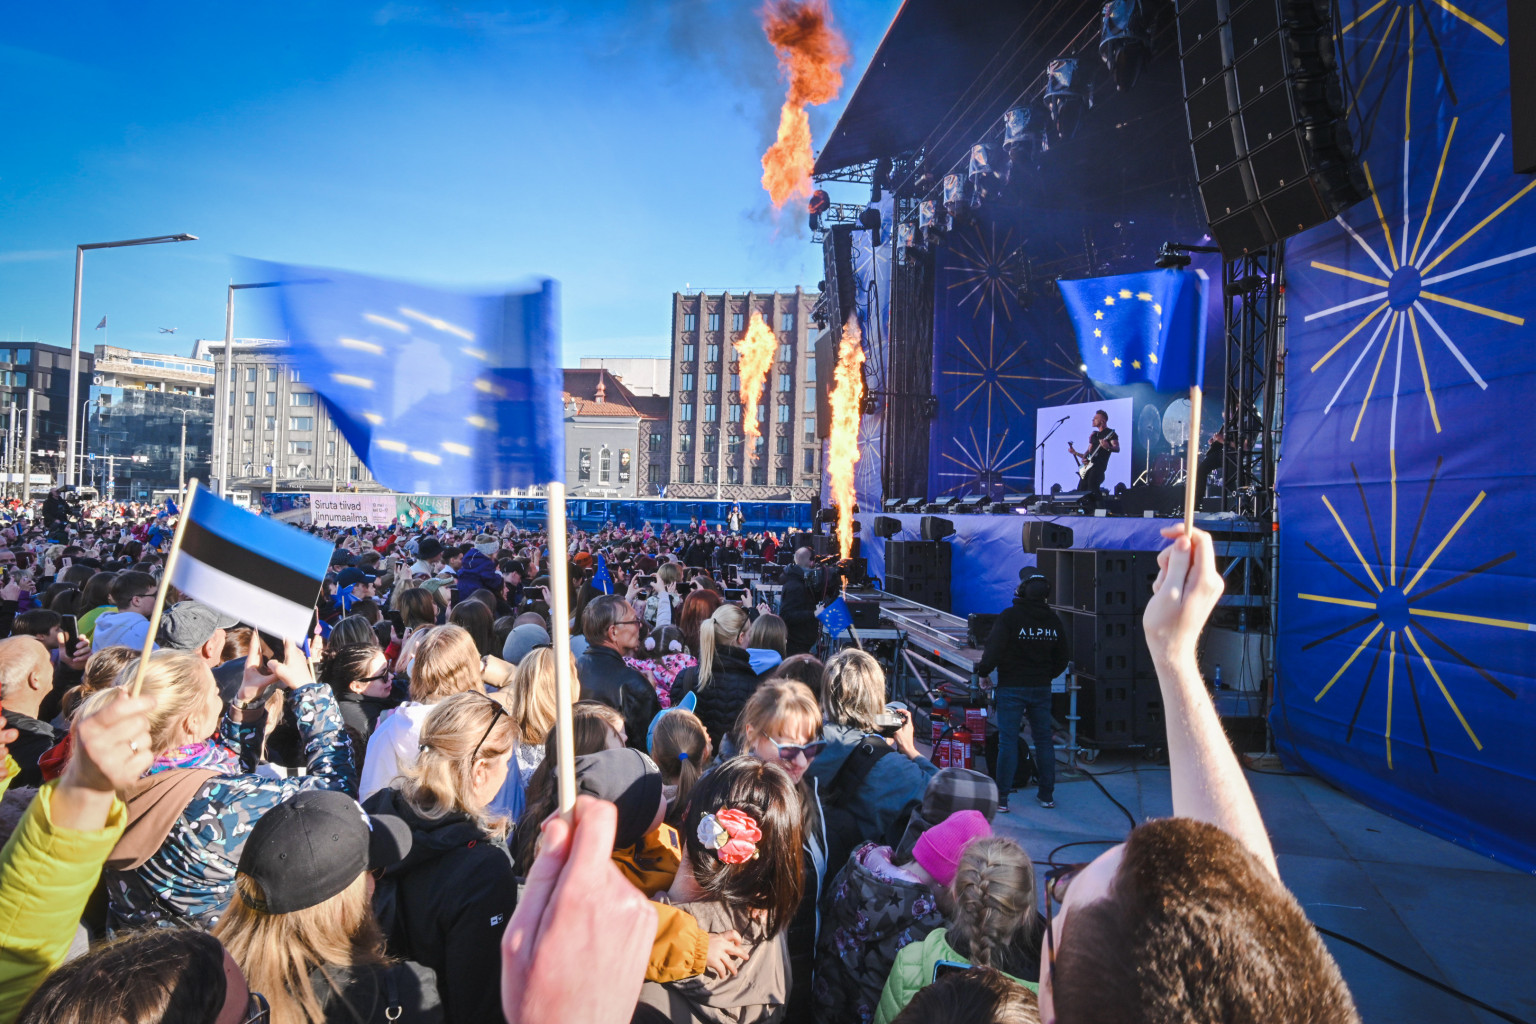 Tommy Cash, nublu ja Bedwetters esiintyvät Eurooppa-päivänä Tallinnan Vapaudenaukiolla 